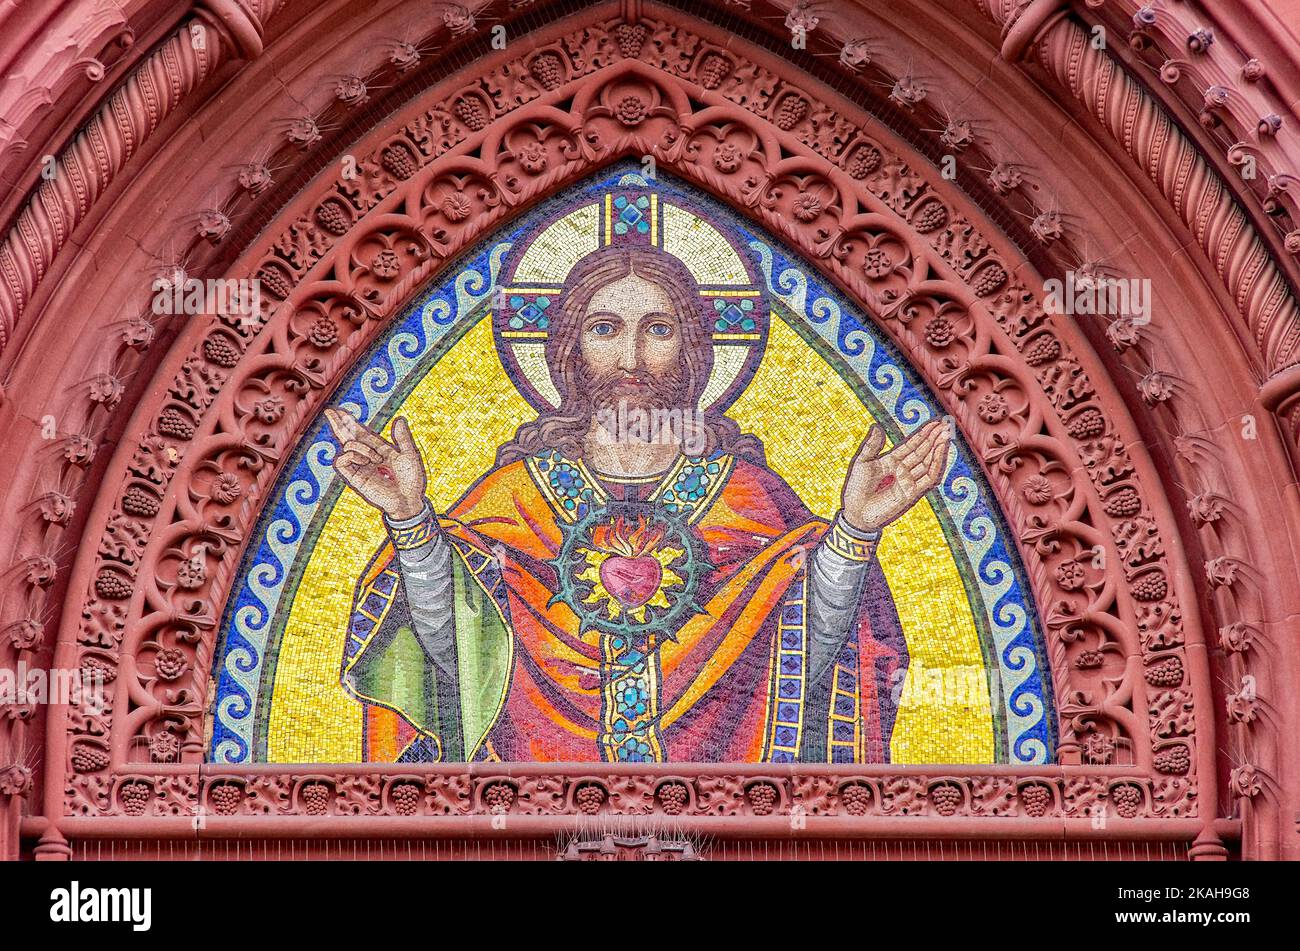 Mosaikdarstellung von Jesus Christus im Spitzbogen des Hauptportals der Herz-Jesu-Kirche in Freiburg im Breisgau, Deutschland. Stockfoto